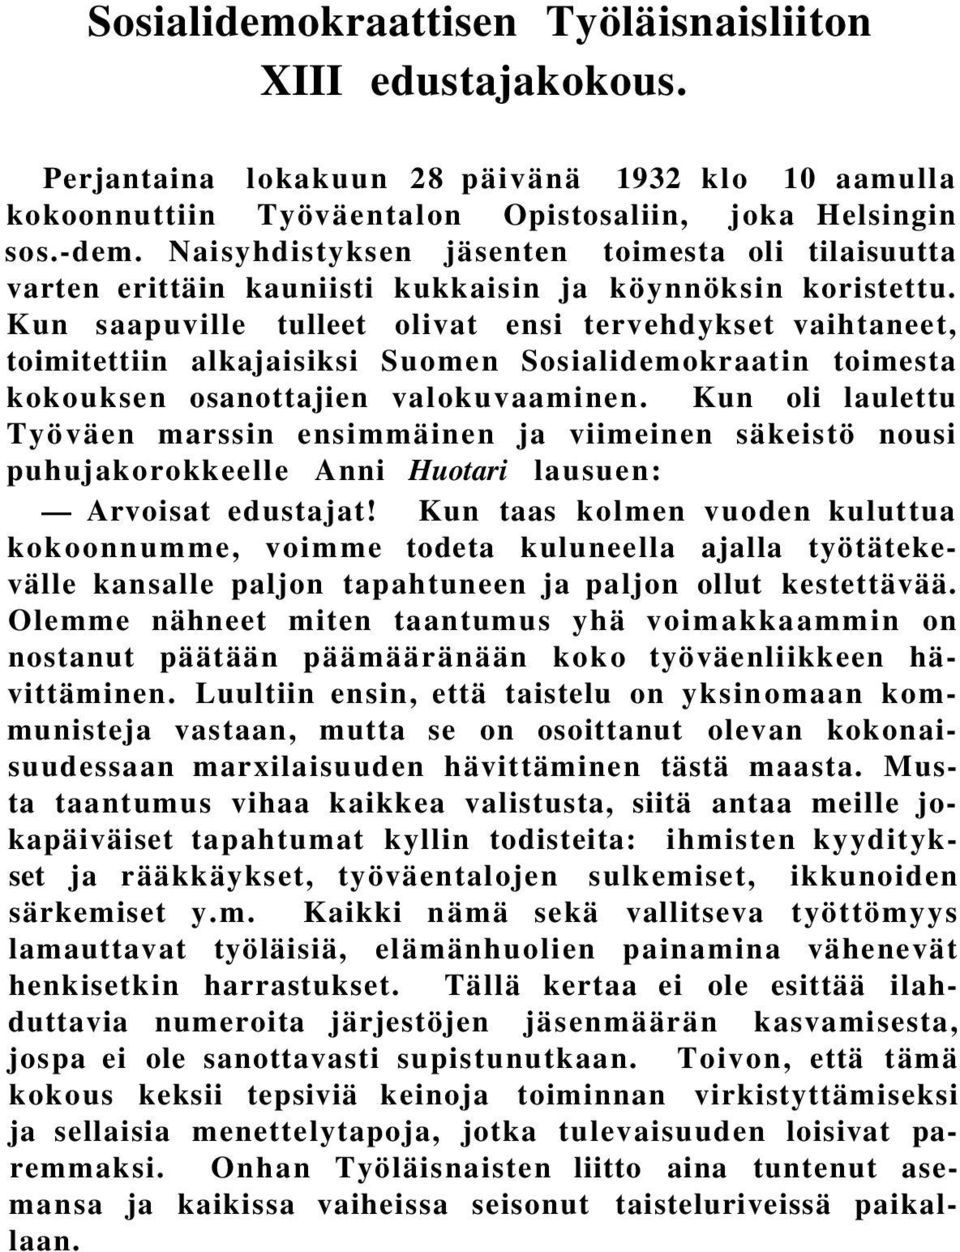 Kun saapuville tulleet olivat ensi tervehdykset vaihtaneet, toimitettiin alkajaisiksi Suomen Sosialidemokraatin toimesta kokouksen osanottajien valokuvaaminen.